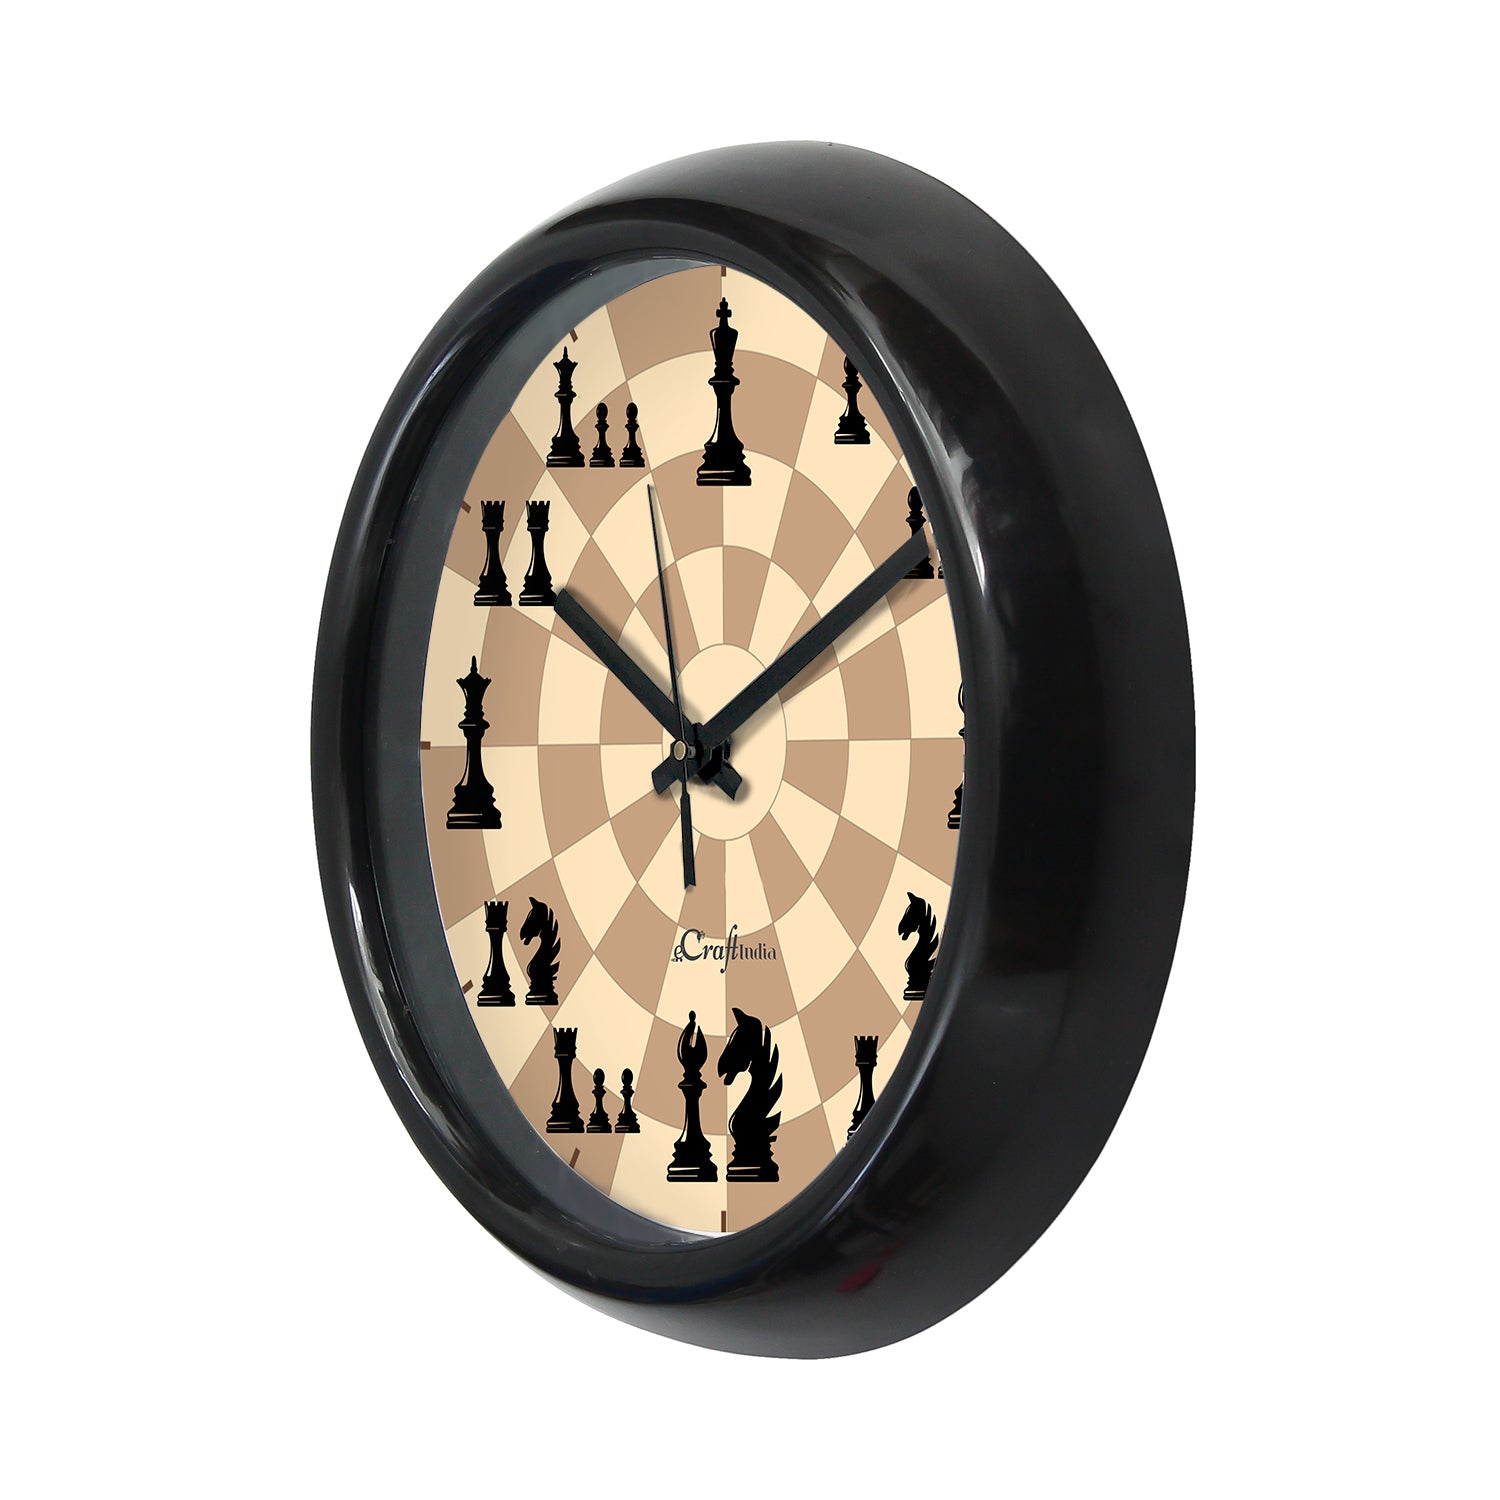 Chess Game Theme Round Shape Analog Designer Wall Clock 4